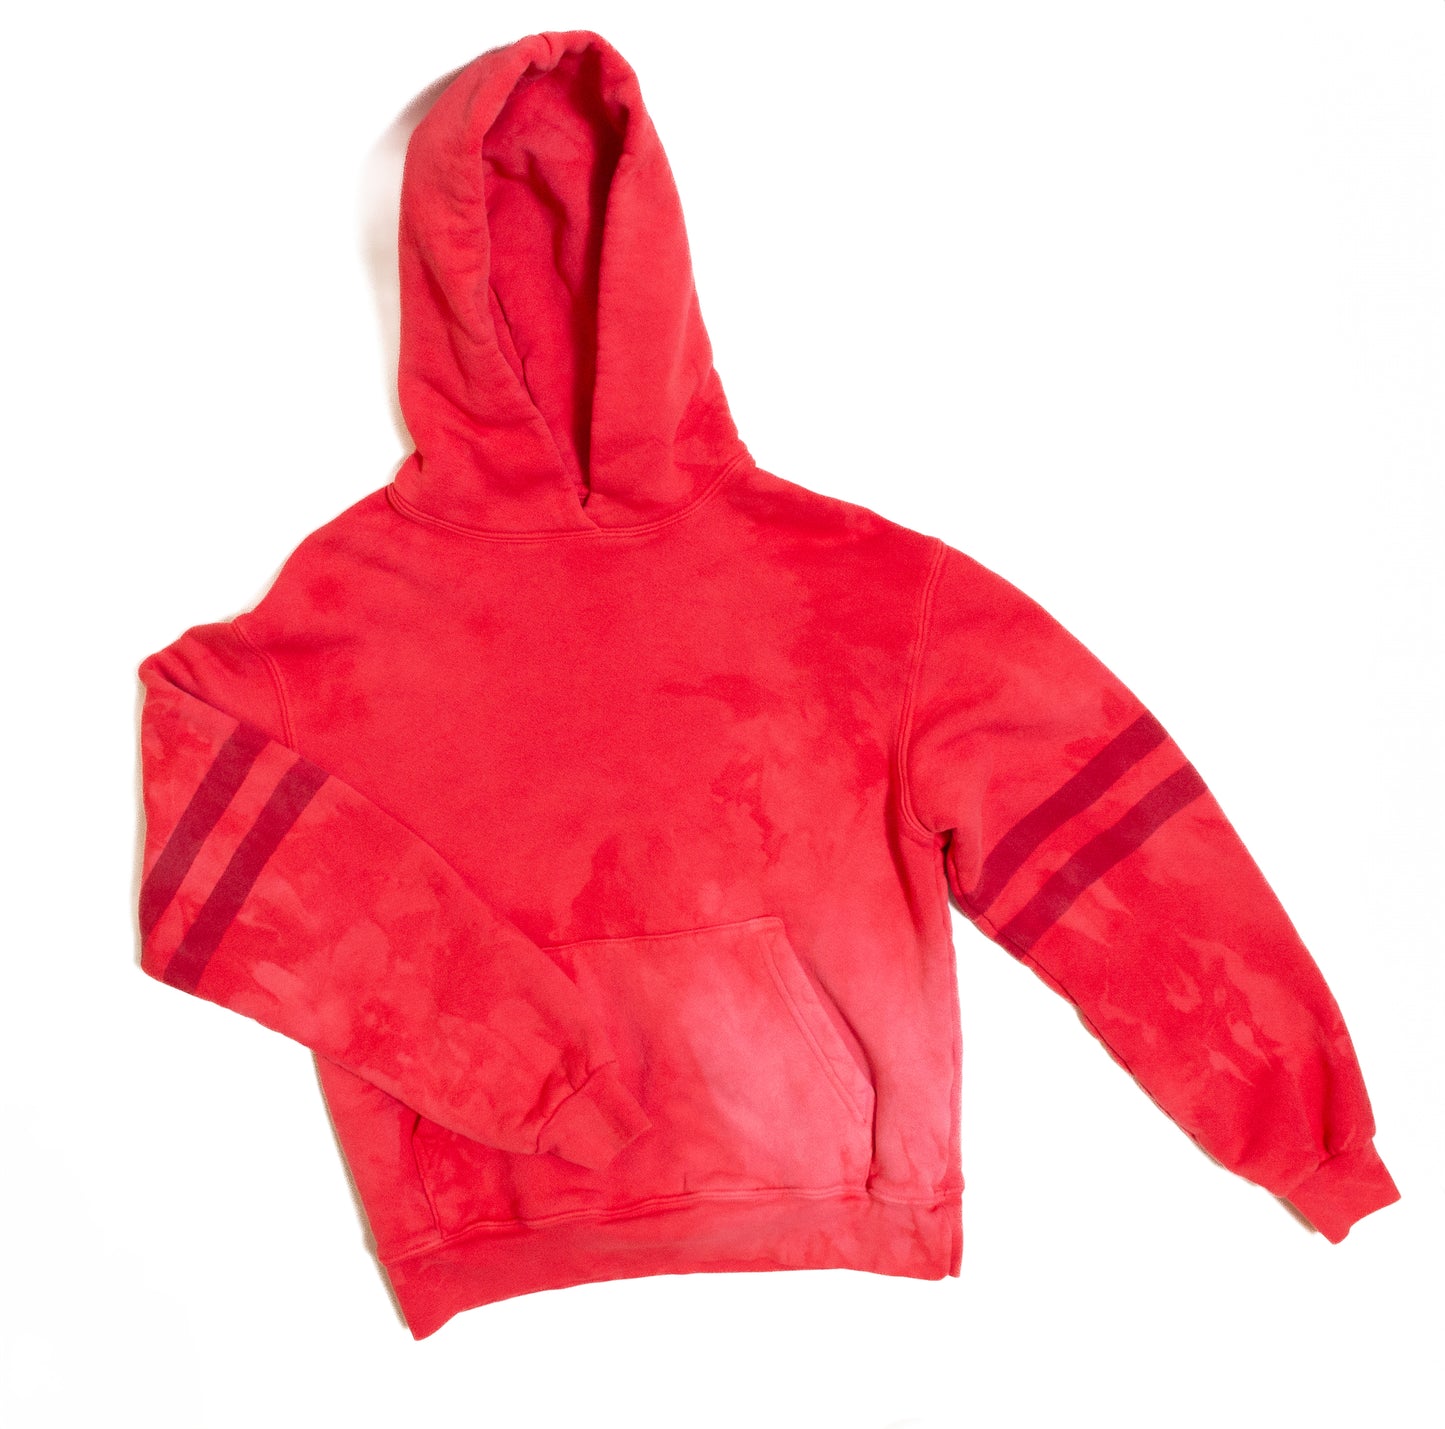 The Varsity Vintage Red Hoodie